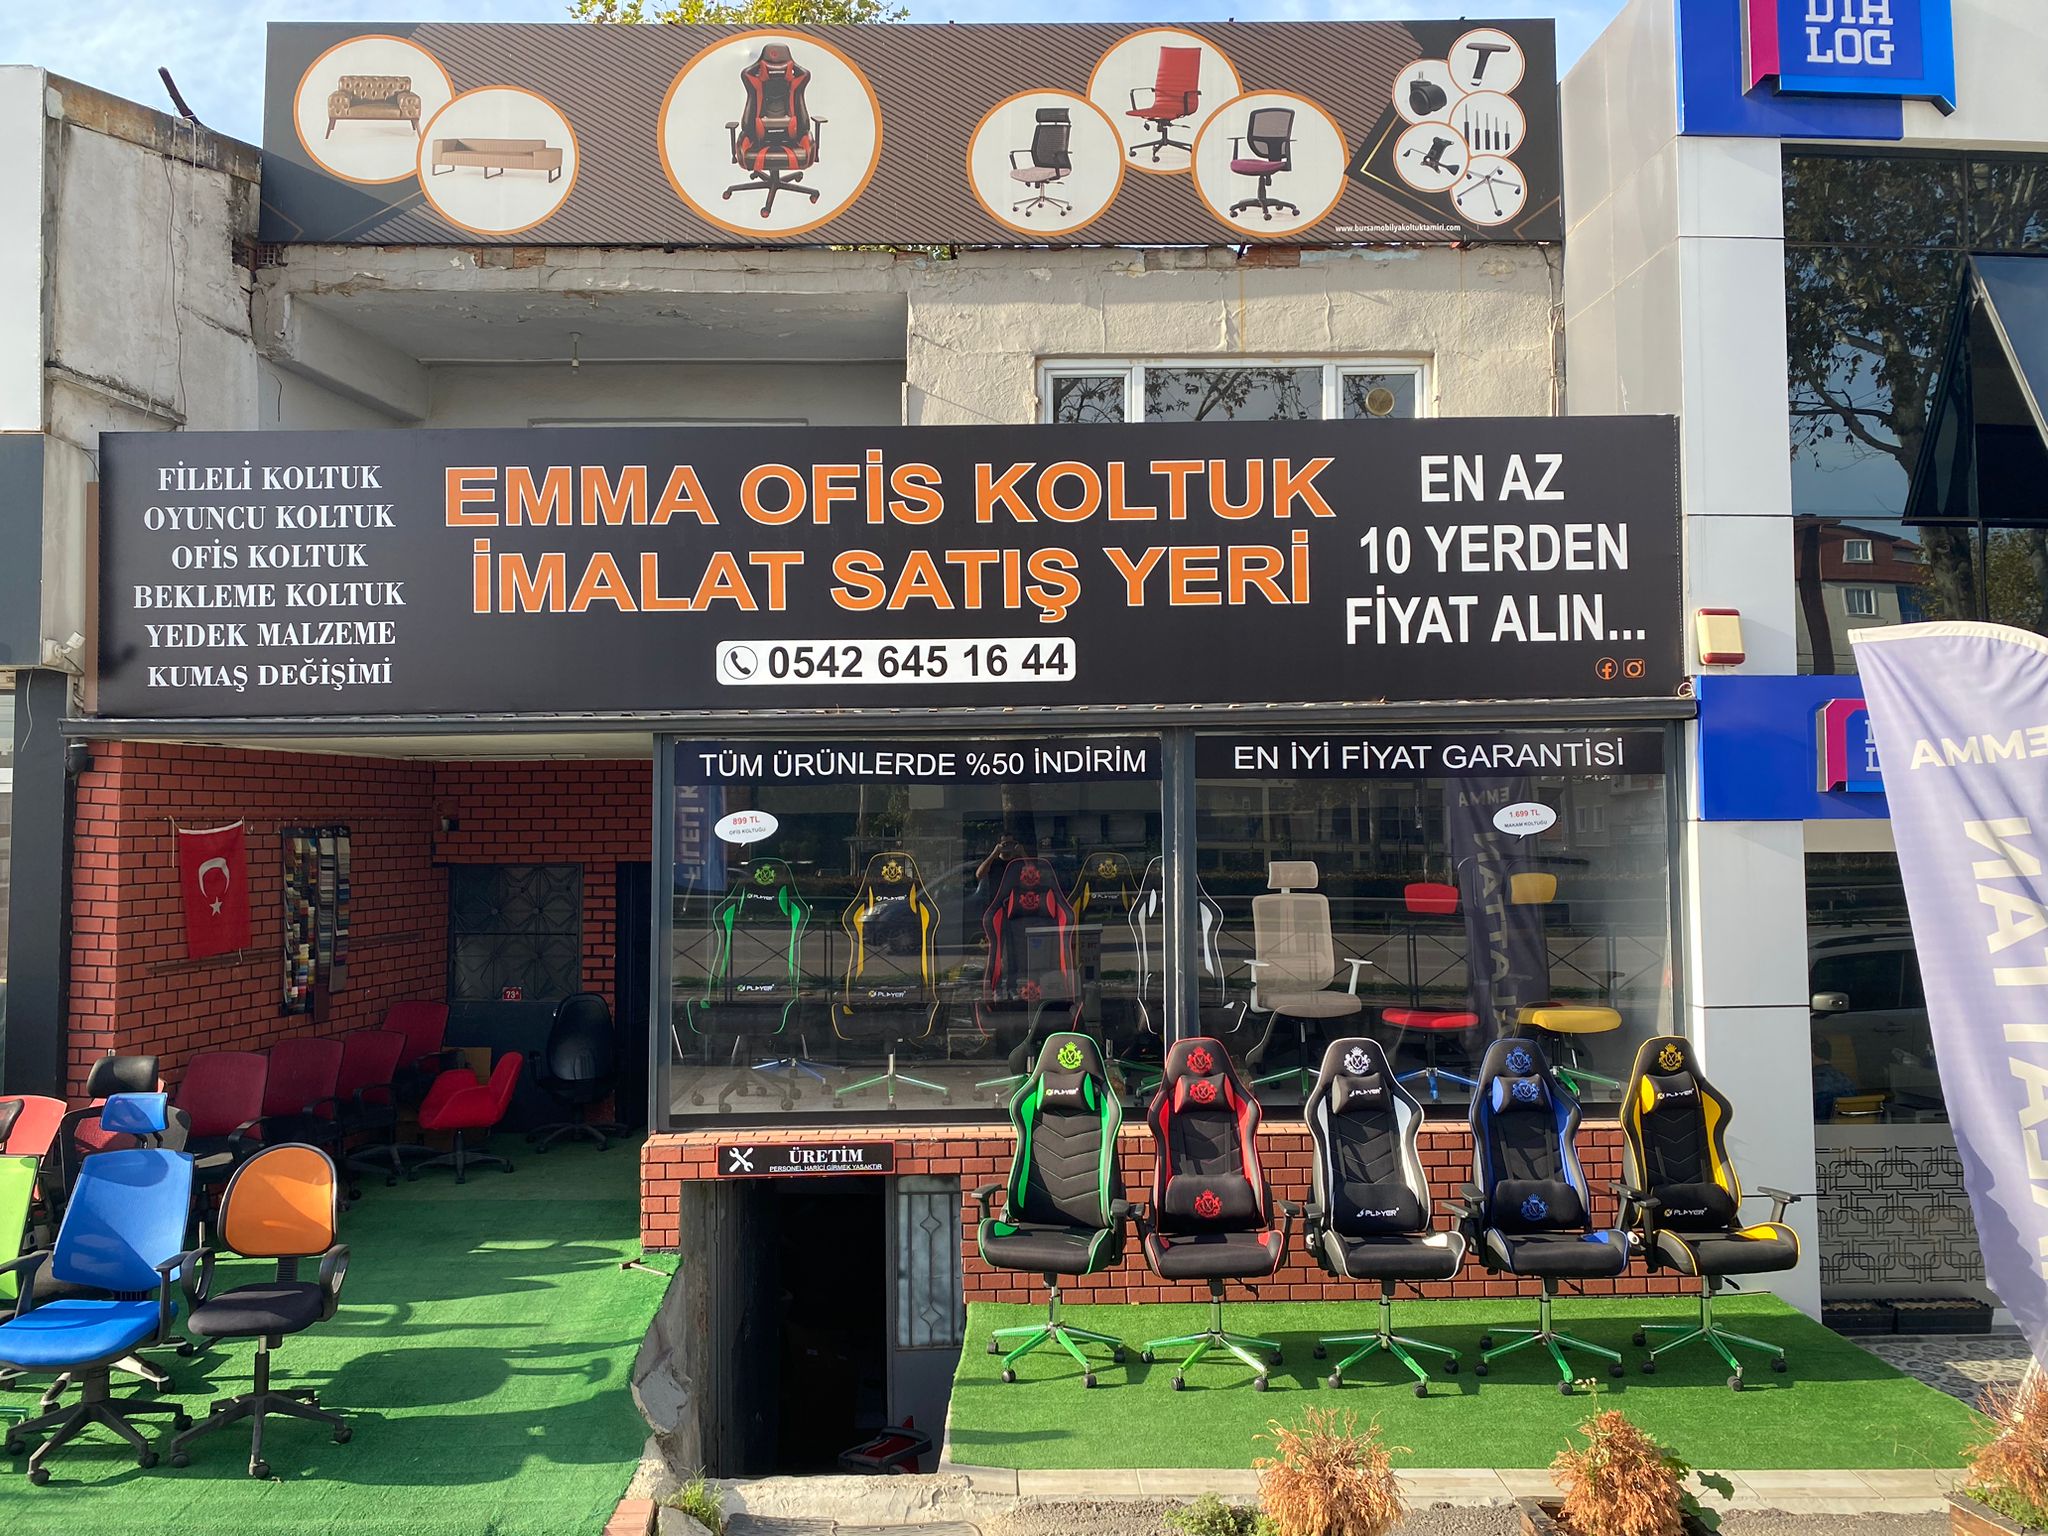 EMMA KOLTUK -Bursa Ofis Koltuk Tamiri-0542 645 16 44- 0542 108 16 44